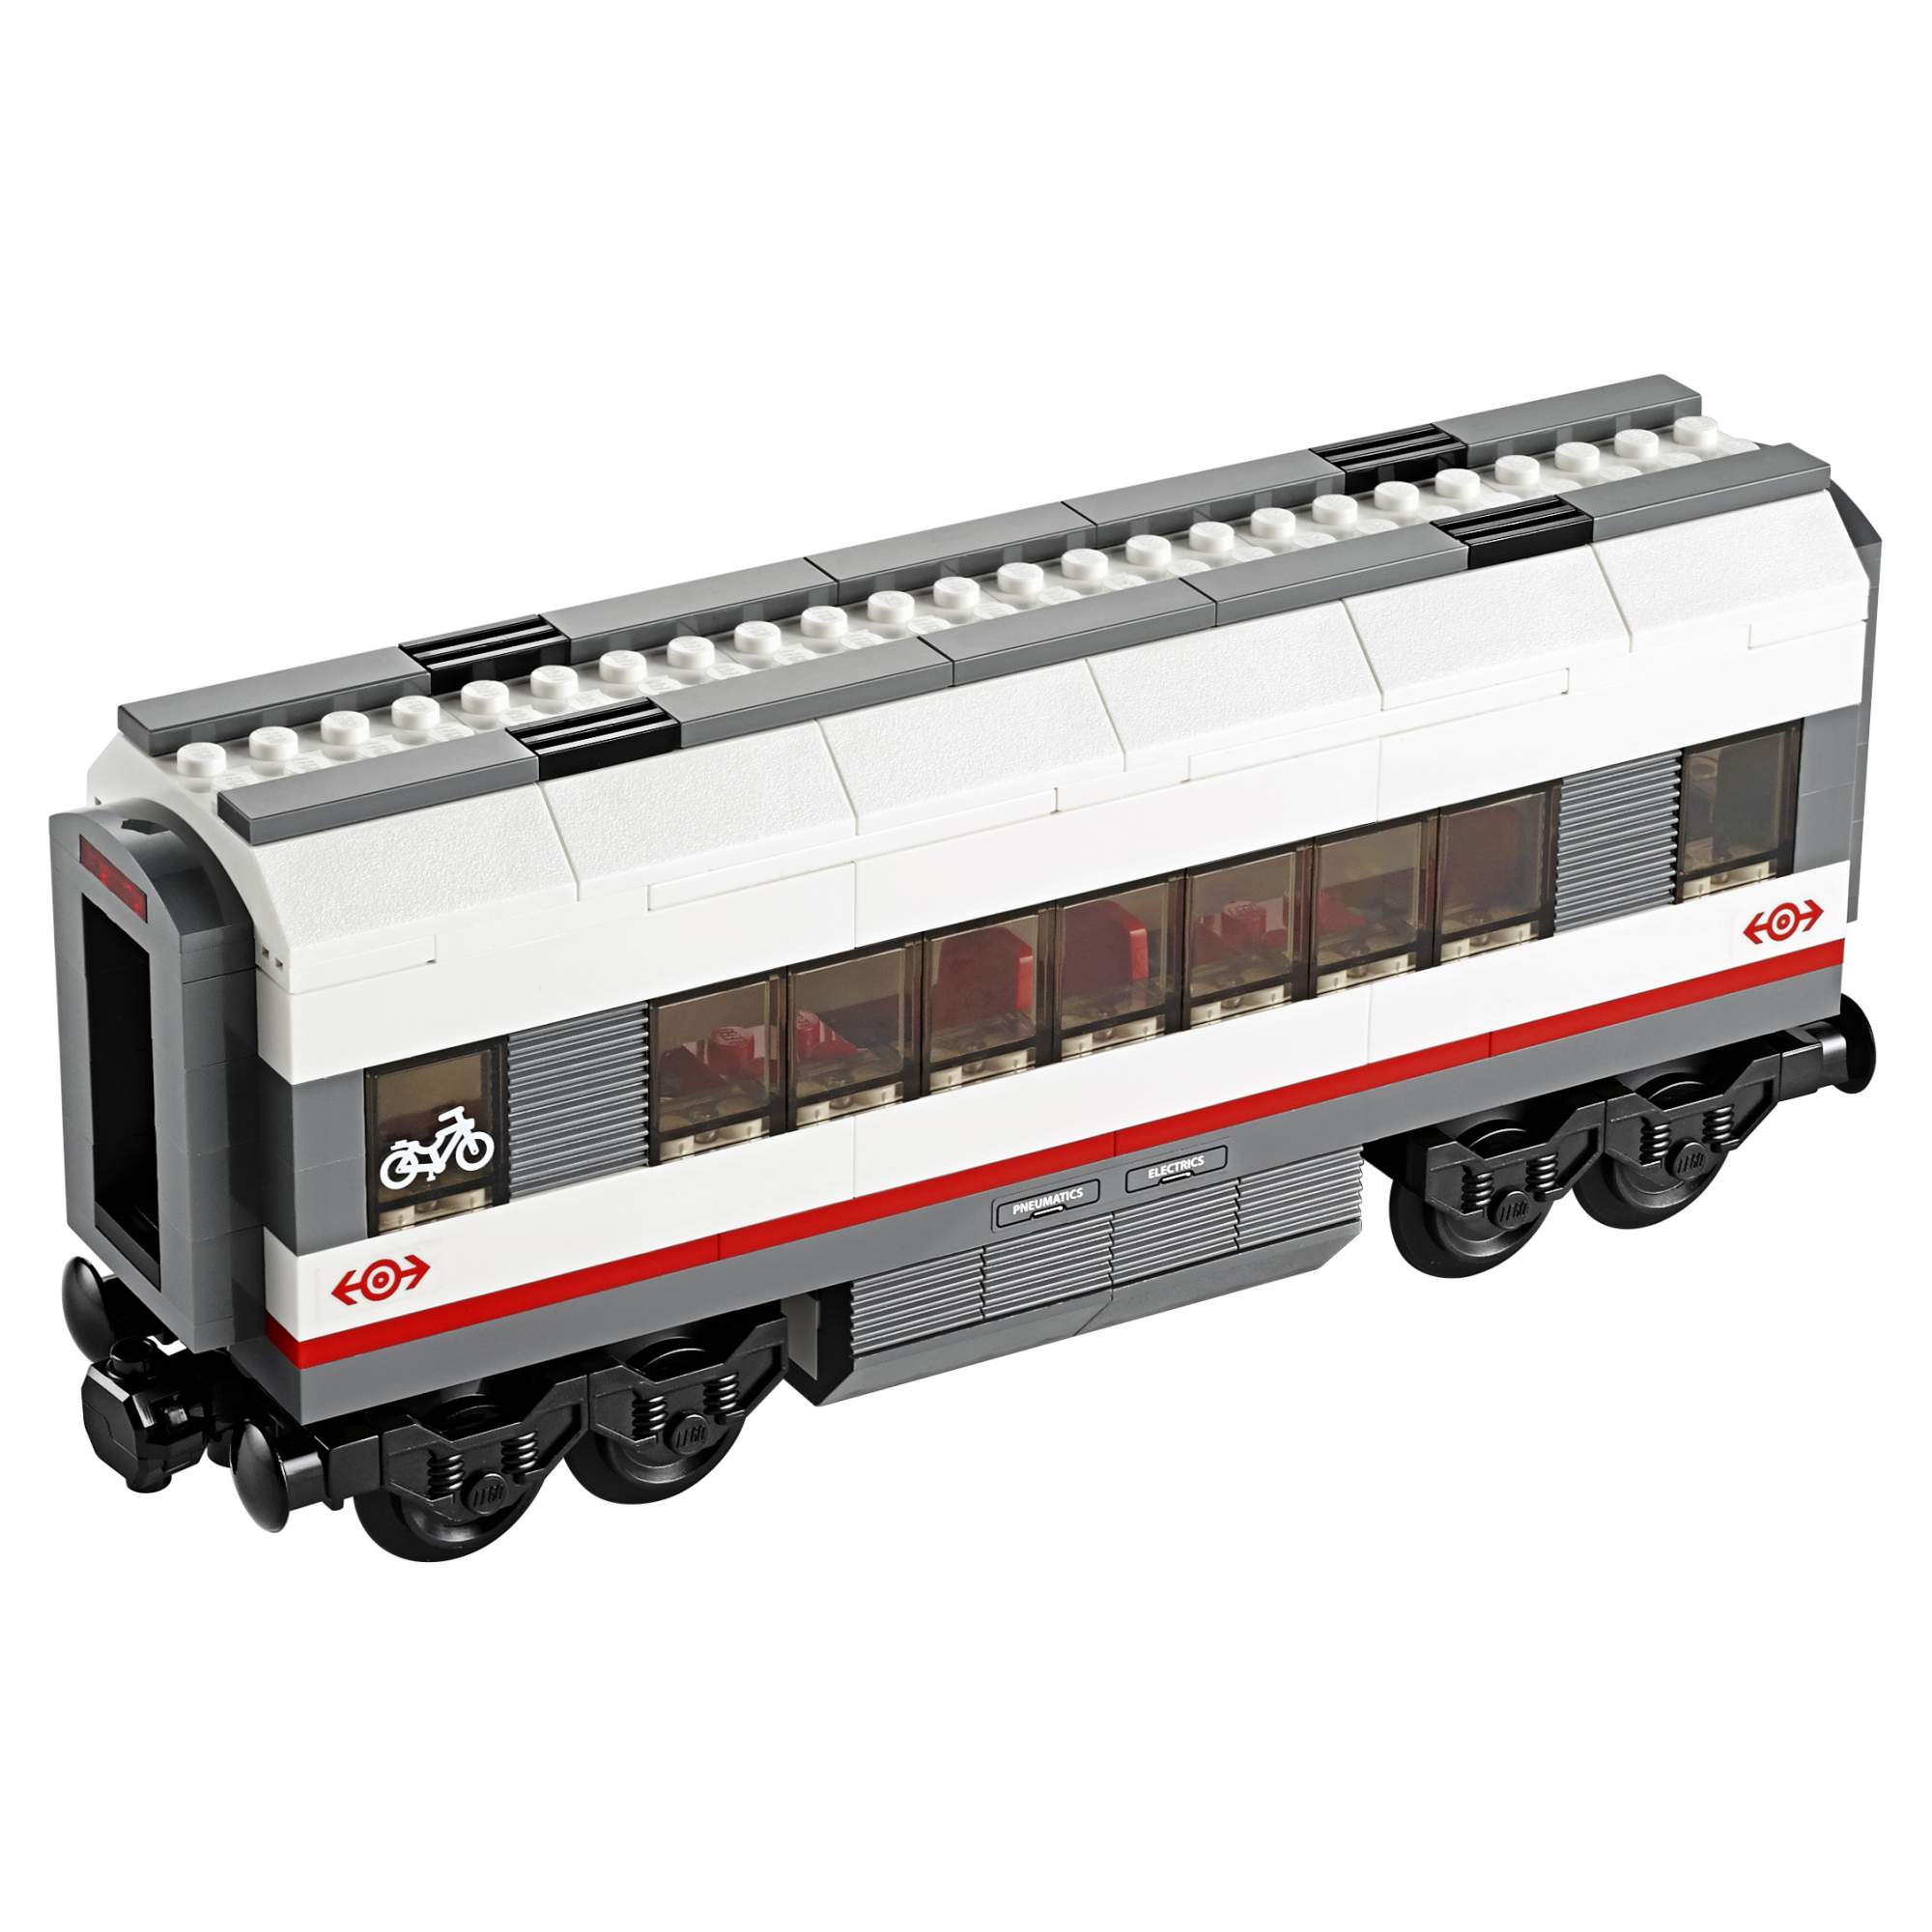 Конструктор LEGO City Trains Скоростной пассажирский поезд (60051)